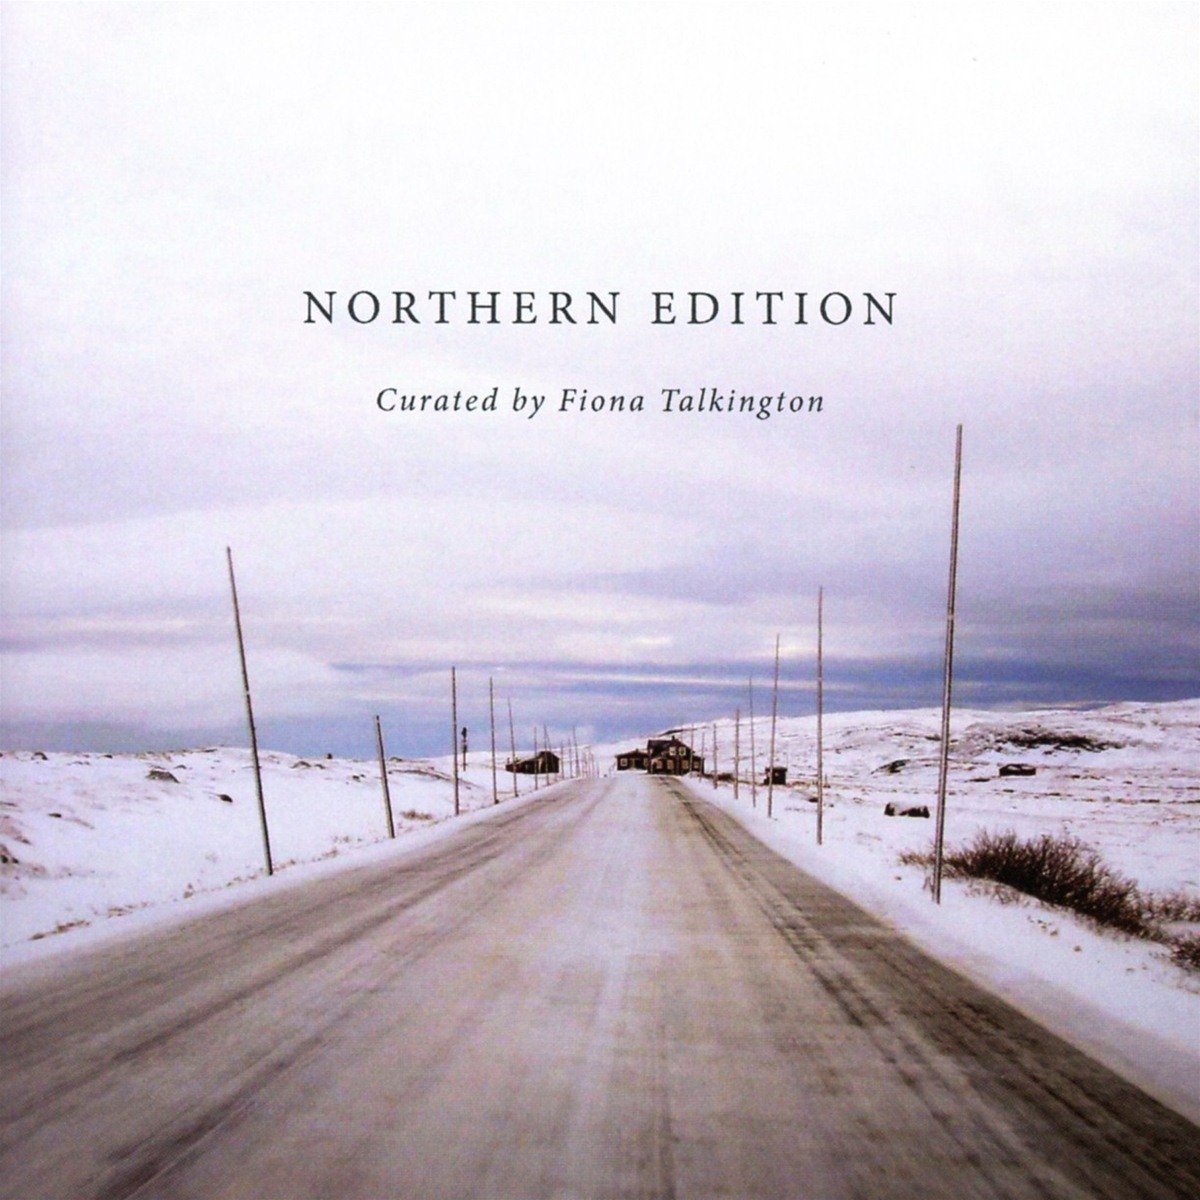 Günün Albümü: "Northern Edition" Curated by Fiona Talkington (Edition Records)